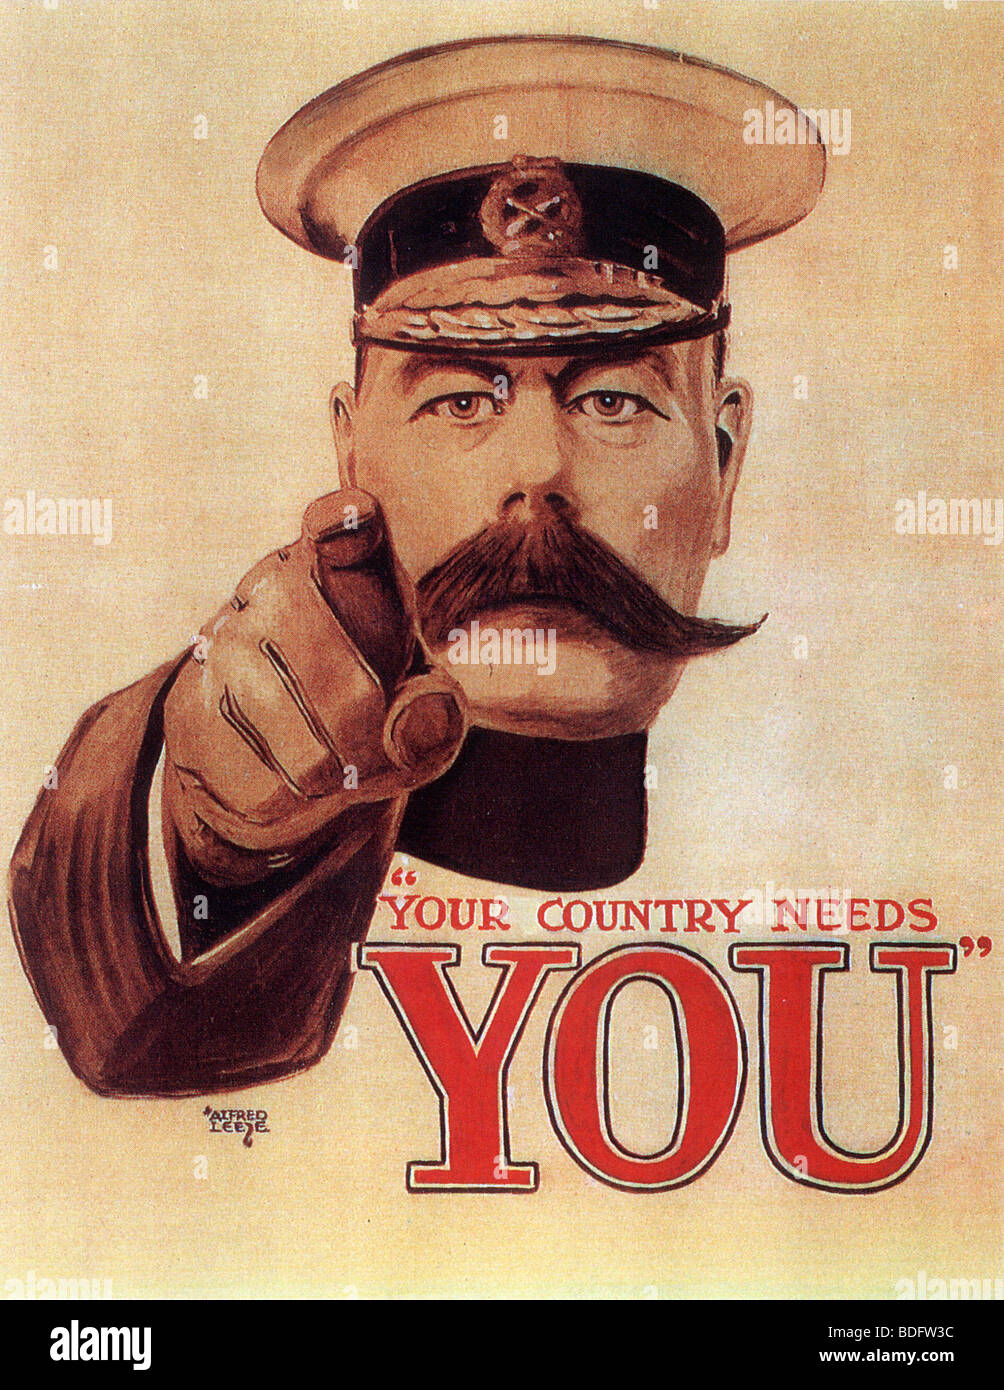 Votre pays a besoin de vous La forme originale de la célèbre affiche de recrutement britannique 1914 conçu par Alfred Leete Banque D'Images